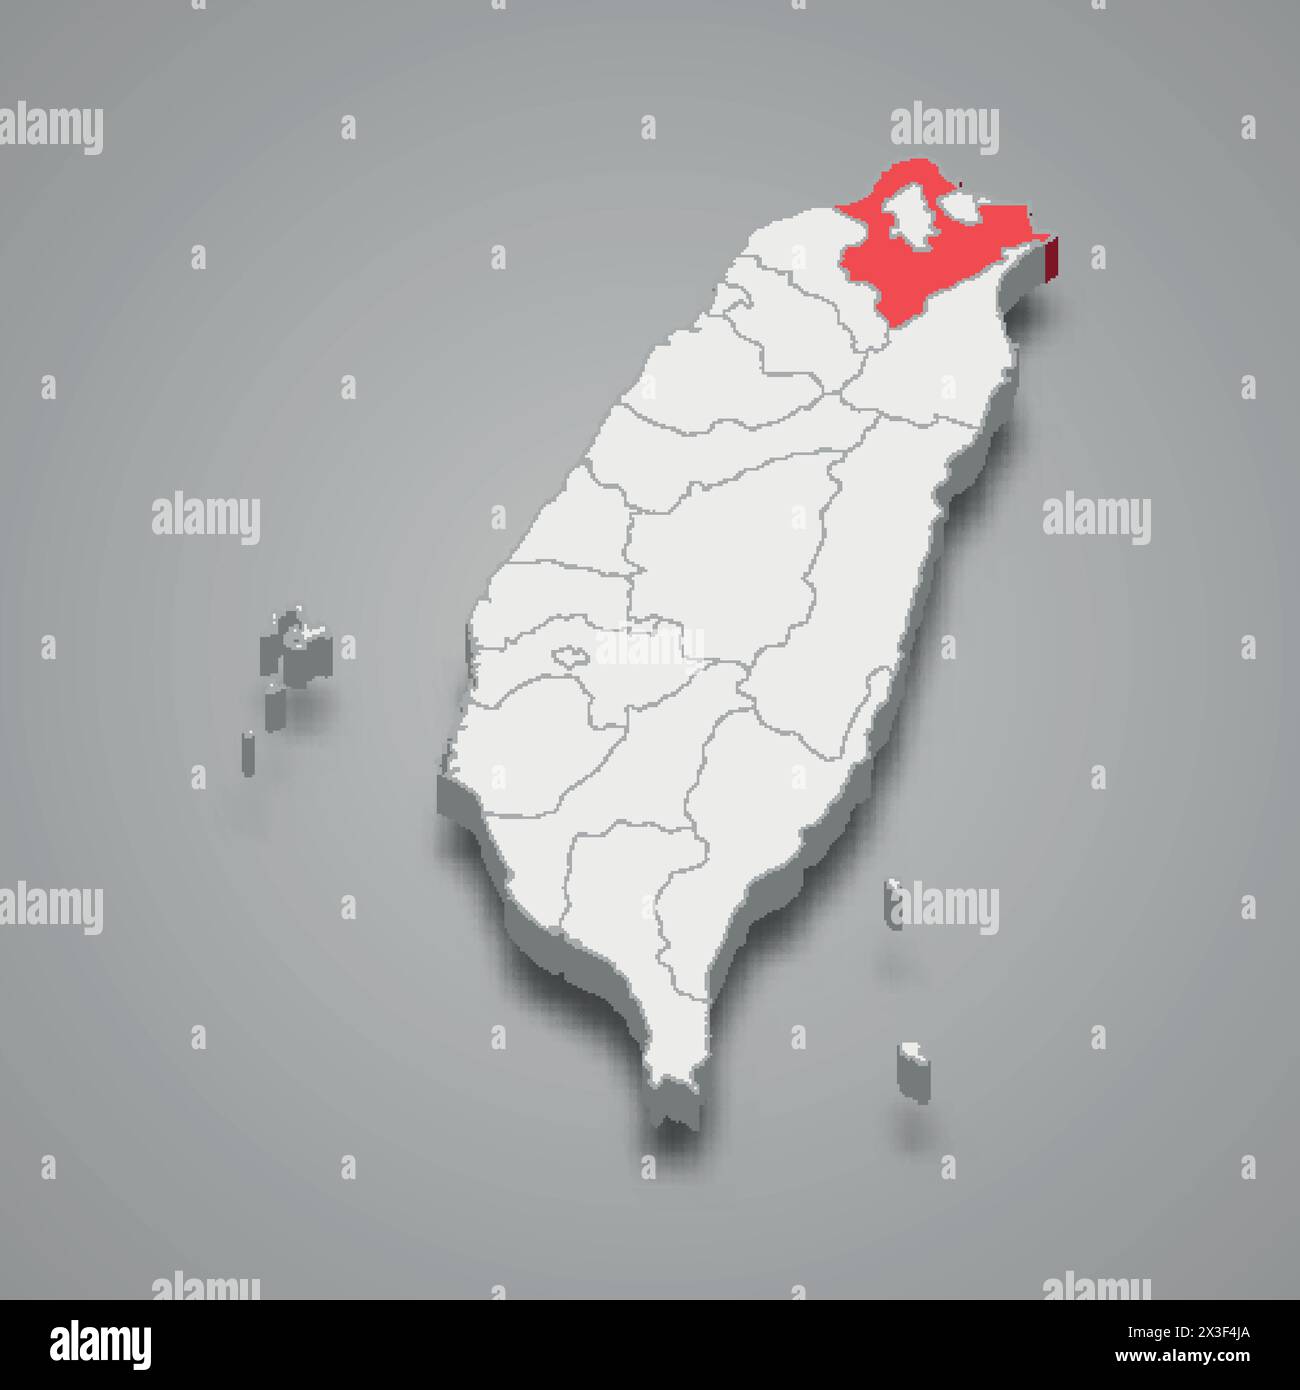 Nouvelle division de la ville de Taipei mise en évidence en rouge sur une carte 3D grise de Taiwan Illustration de Vecteur